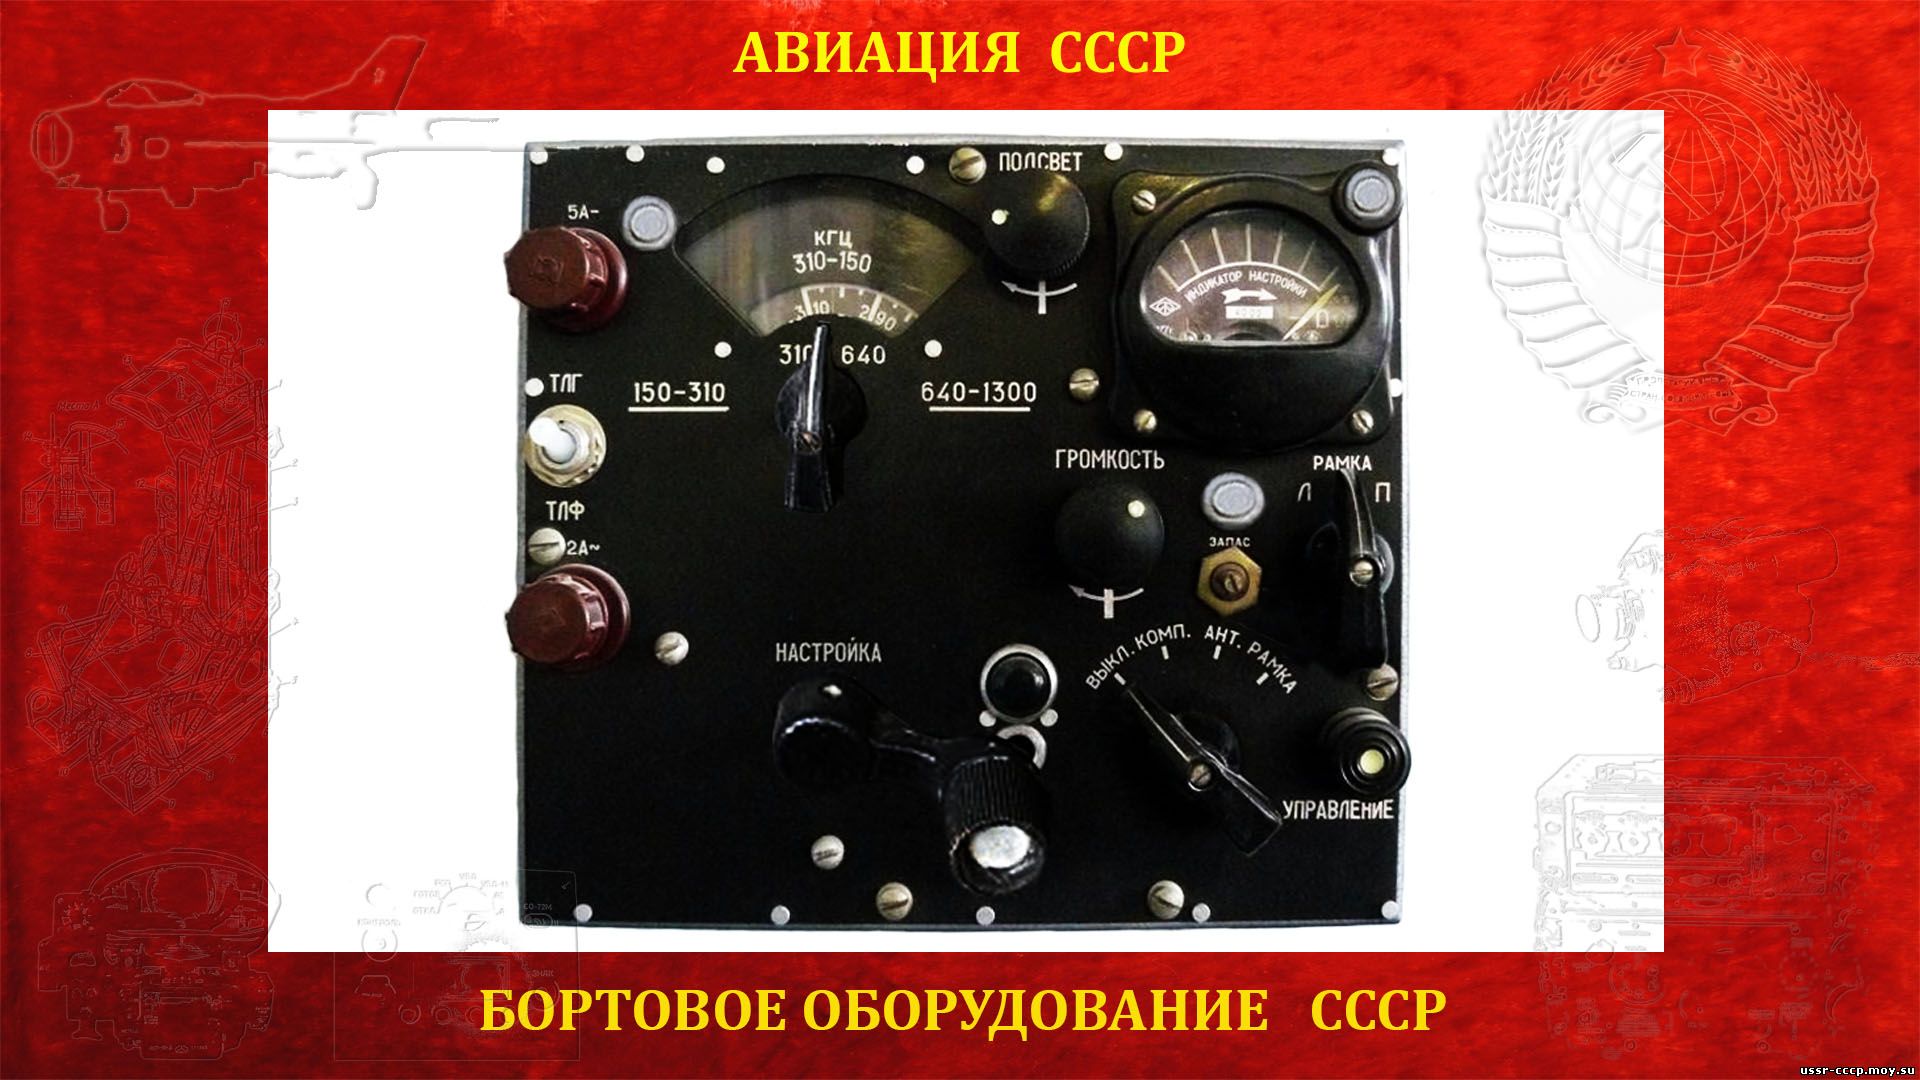 АРК-5 — Автоматический радиокомпас СССР (повествование)